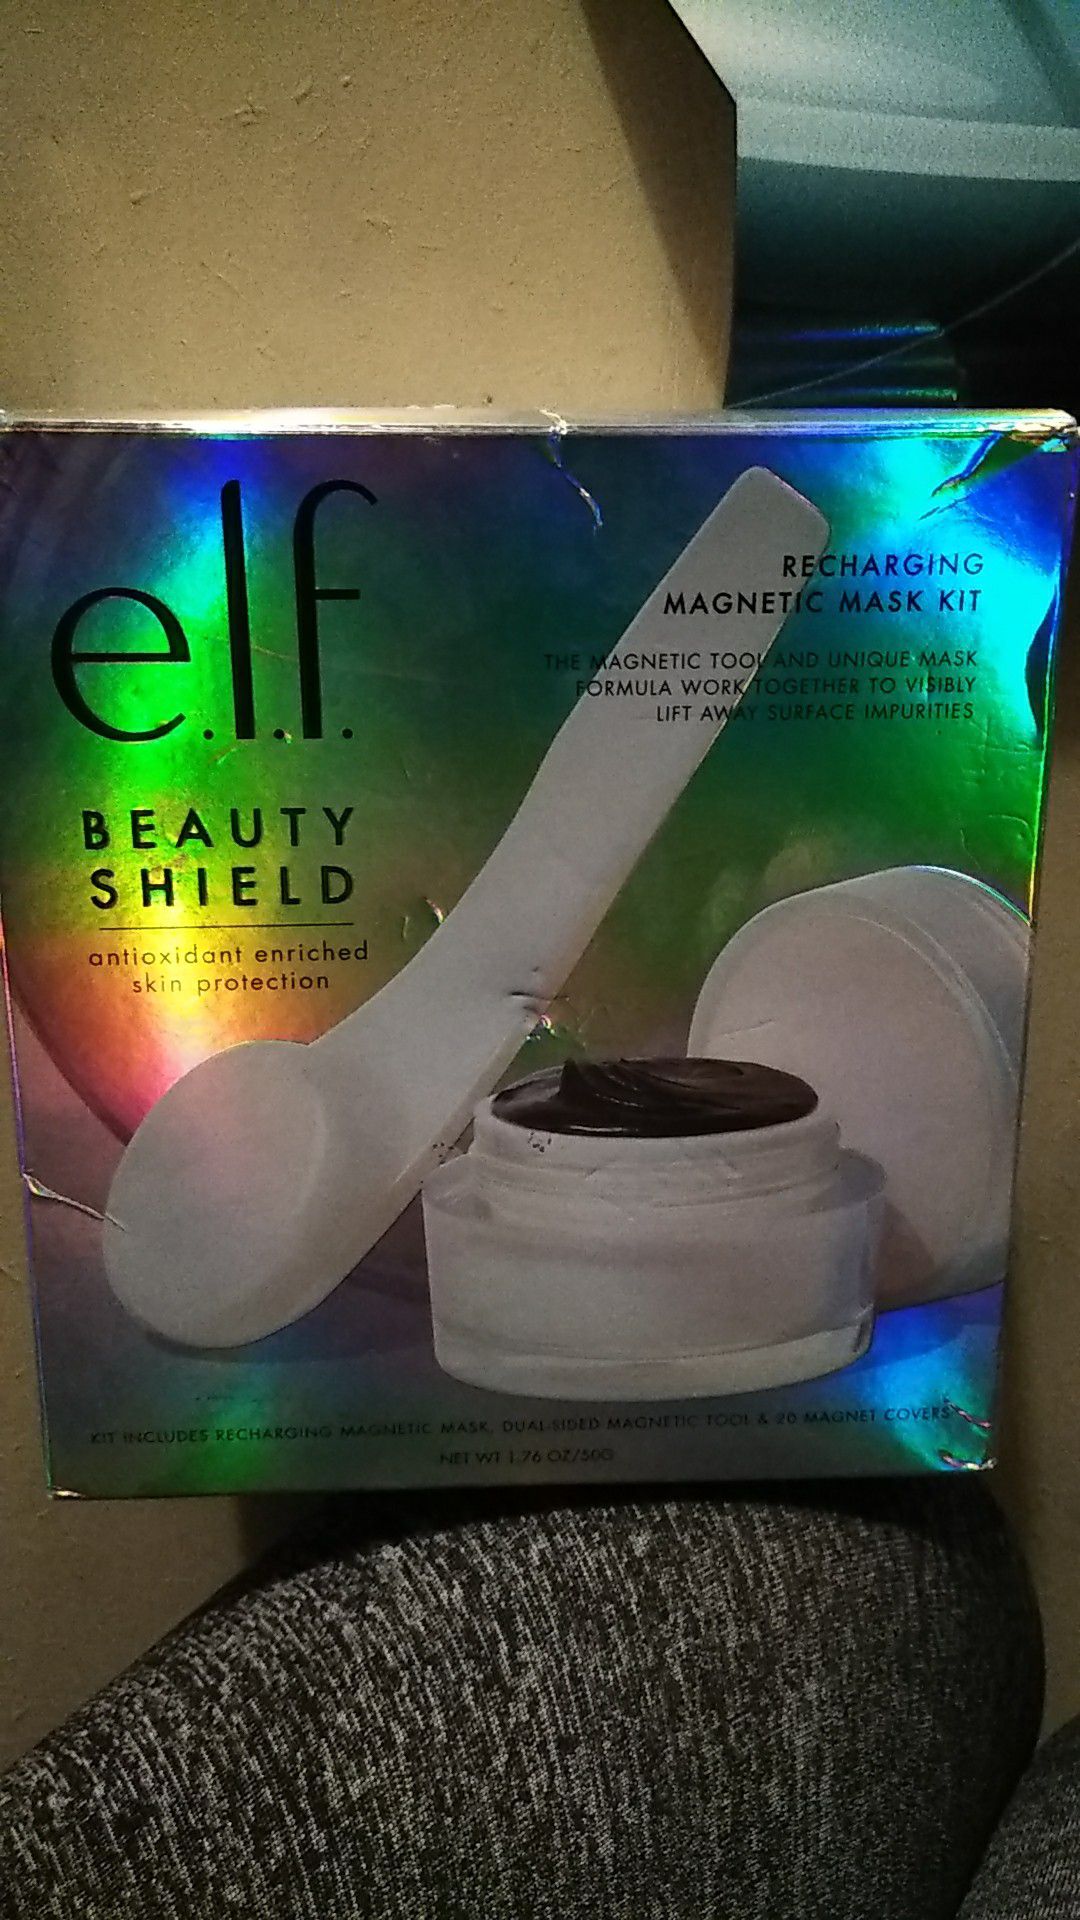 Elf magnetic face mask